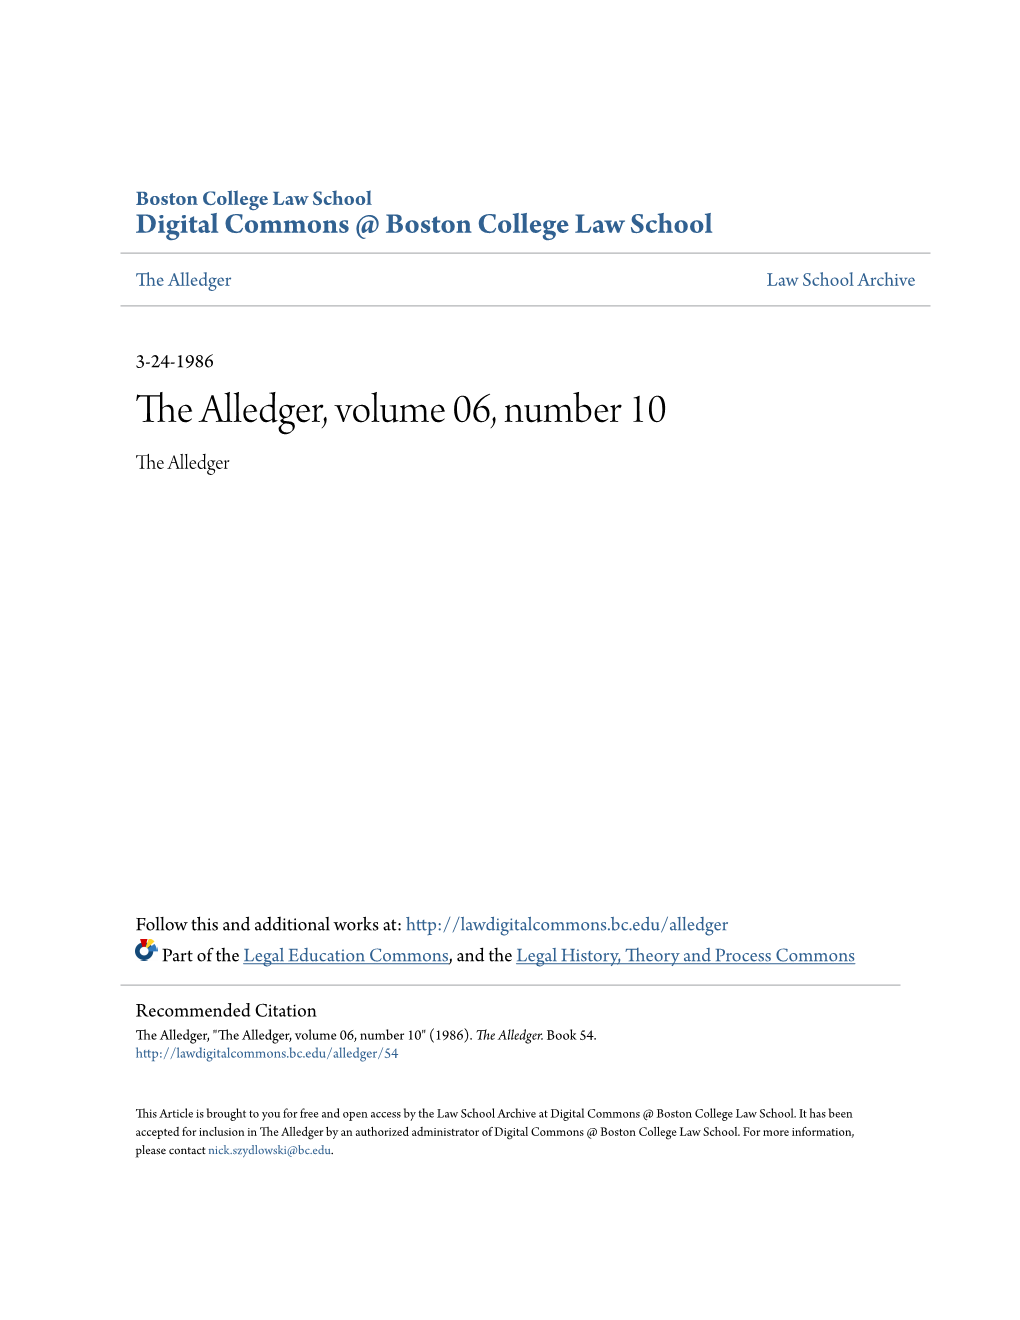 The Alledger, Volume 06, Number 10 the Alledger